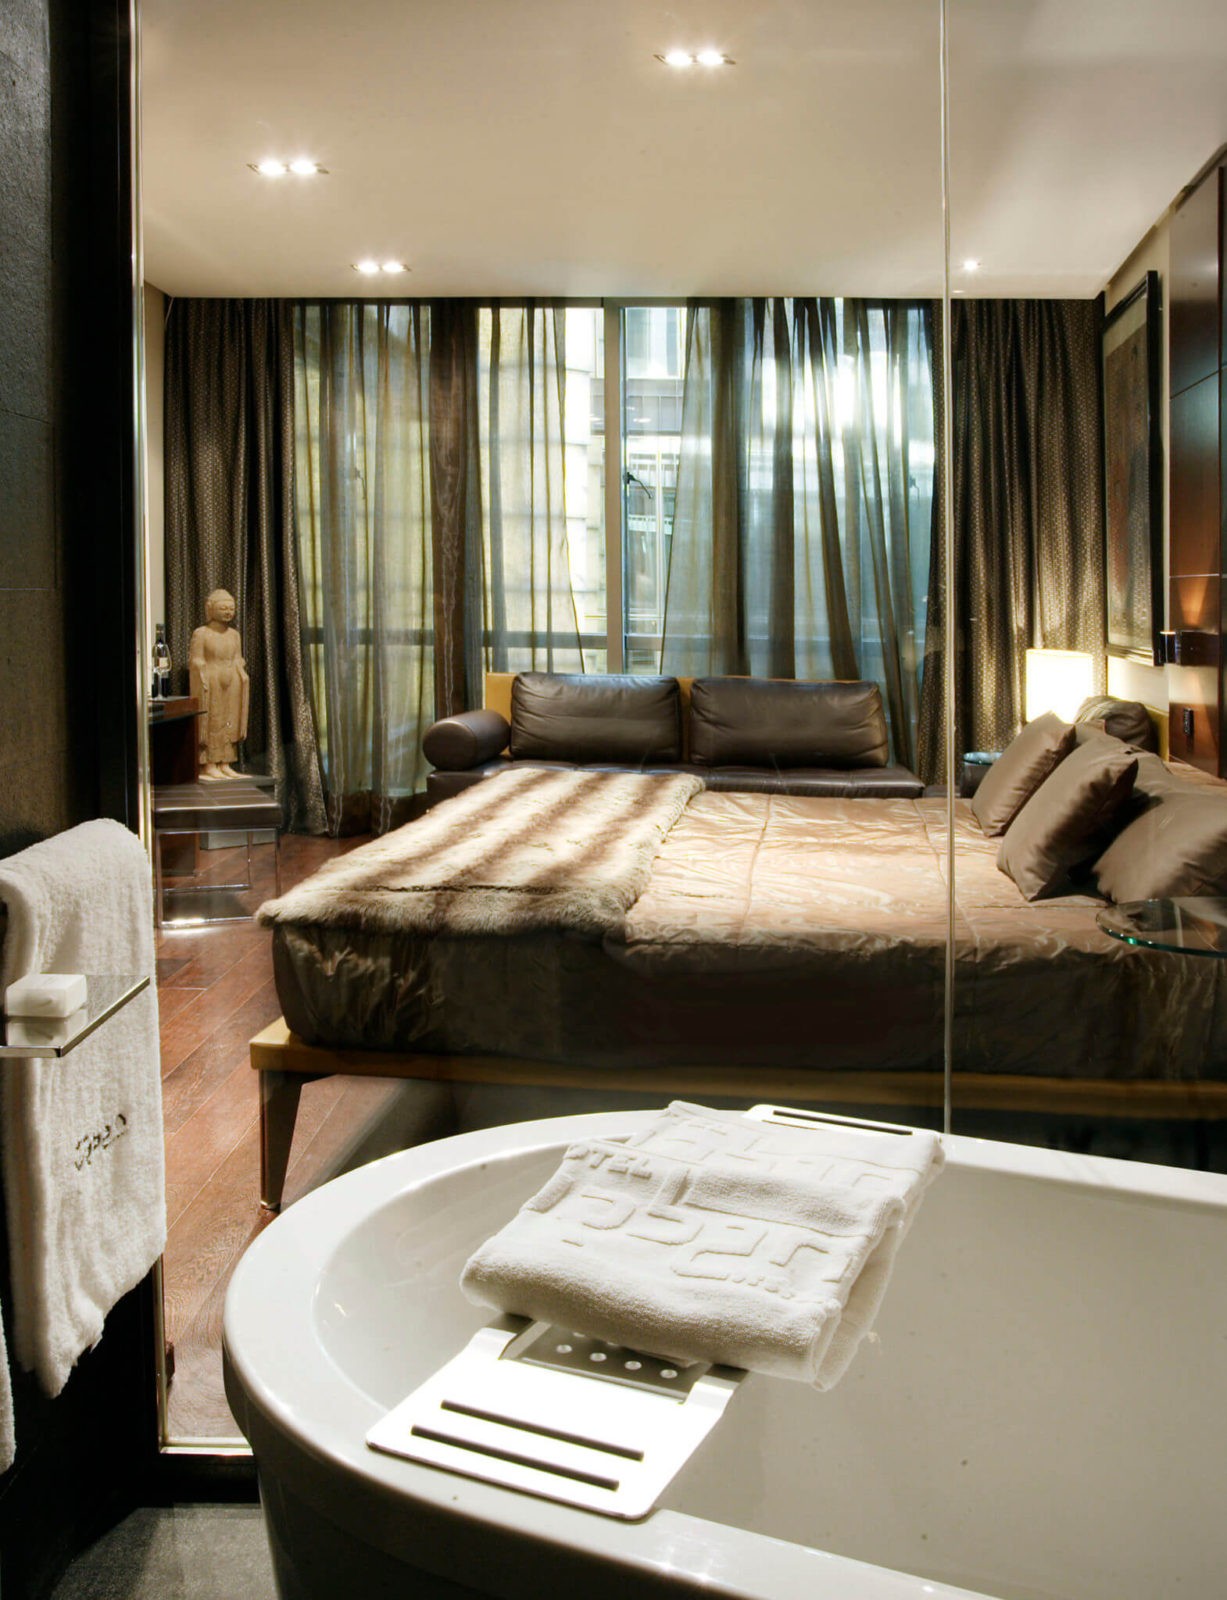 Hotel Urban Room and Bath